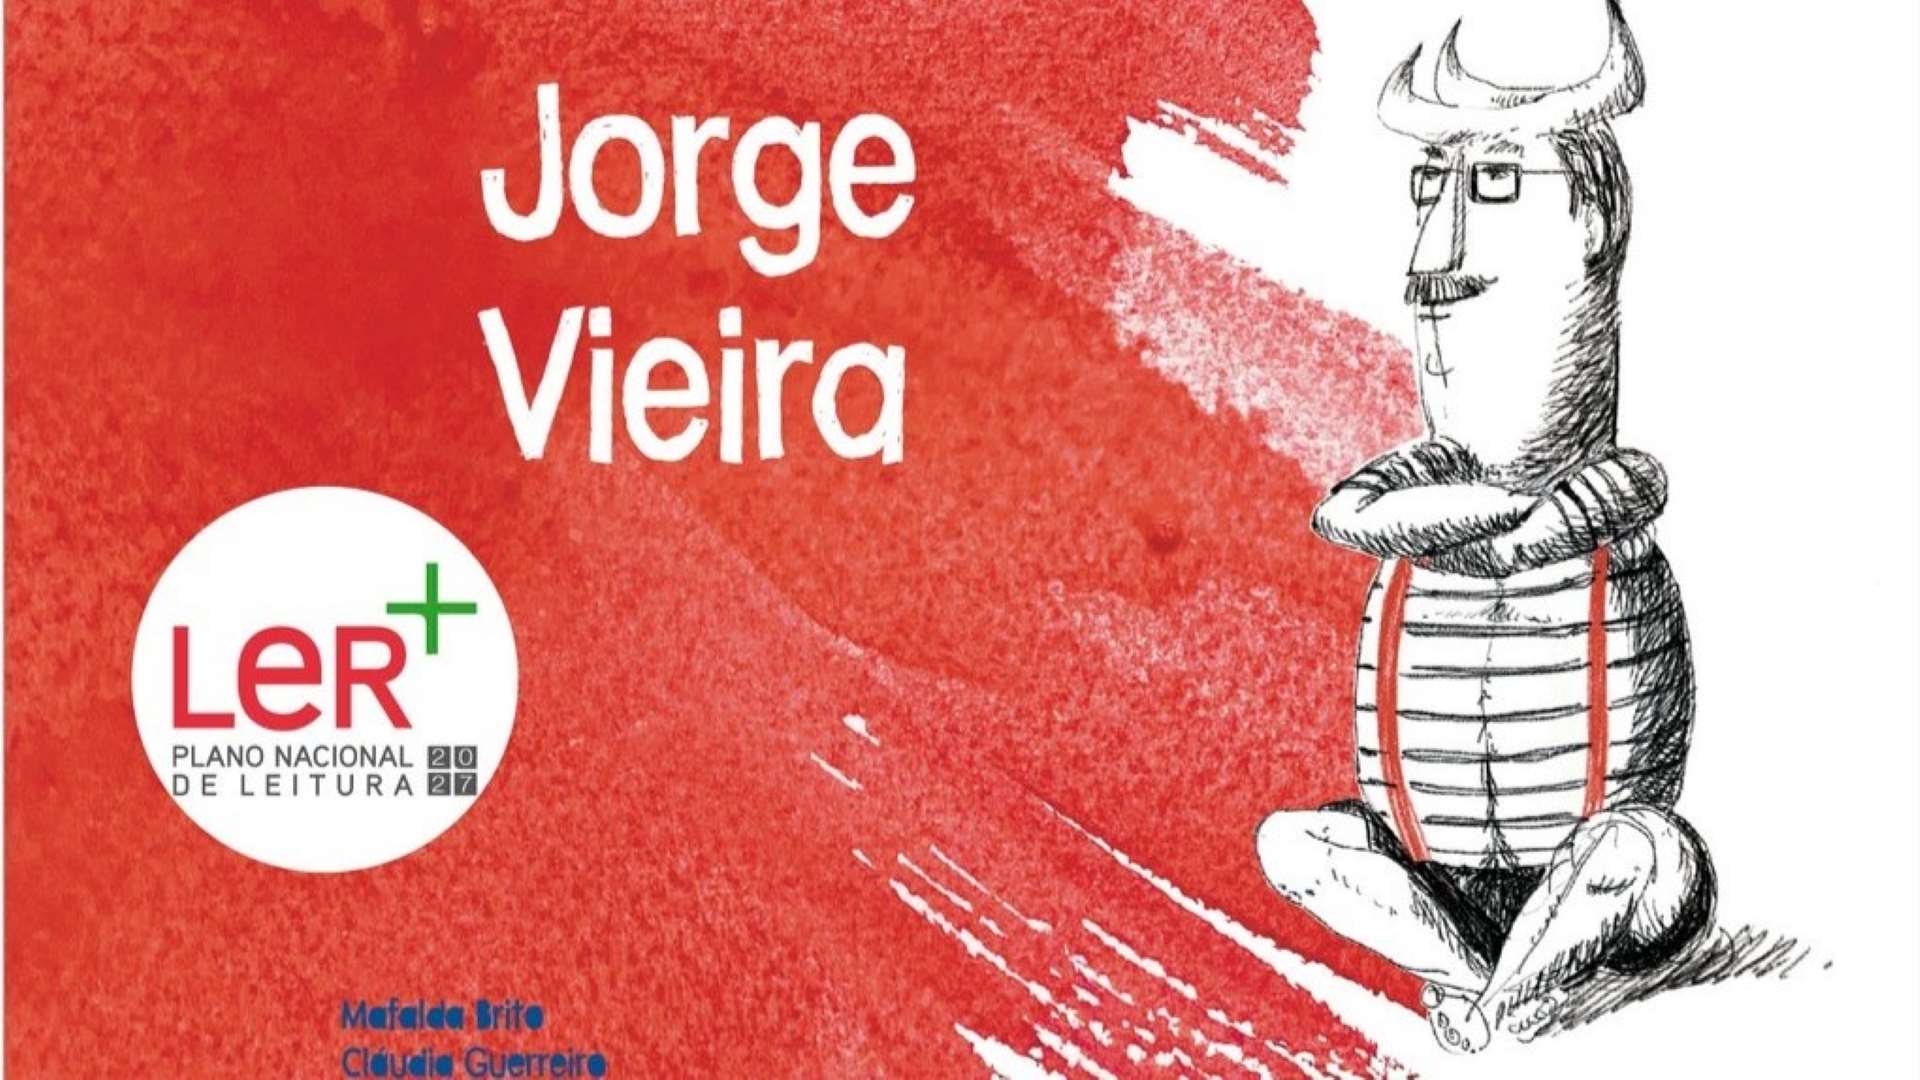 Livro ilustrado sobre Jorge Vieira integra Plano Nacional de Leitura